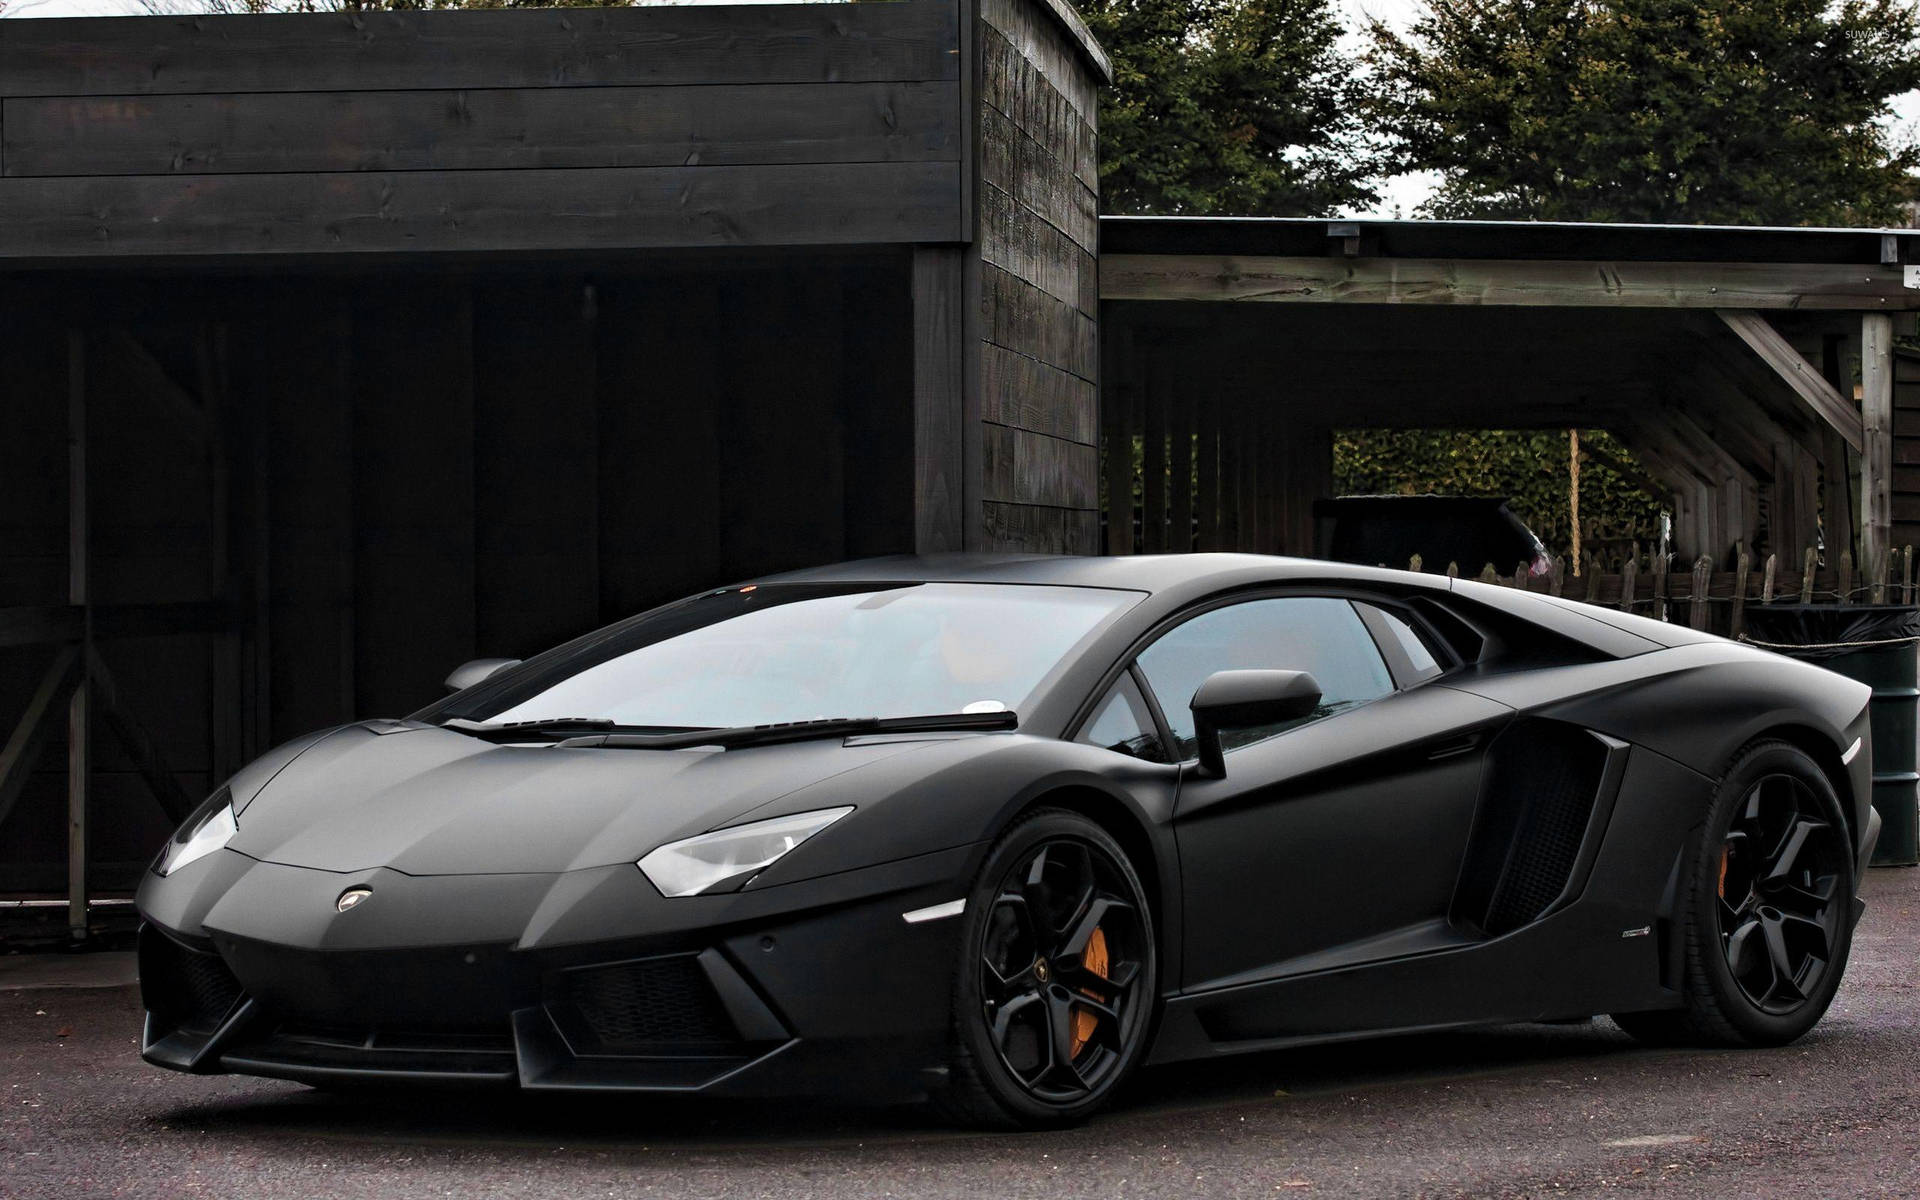 Parked Black Lamborghini Wallpaper